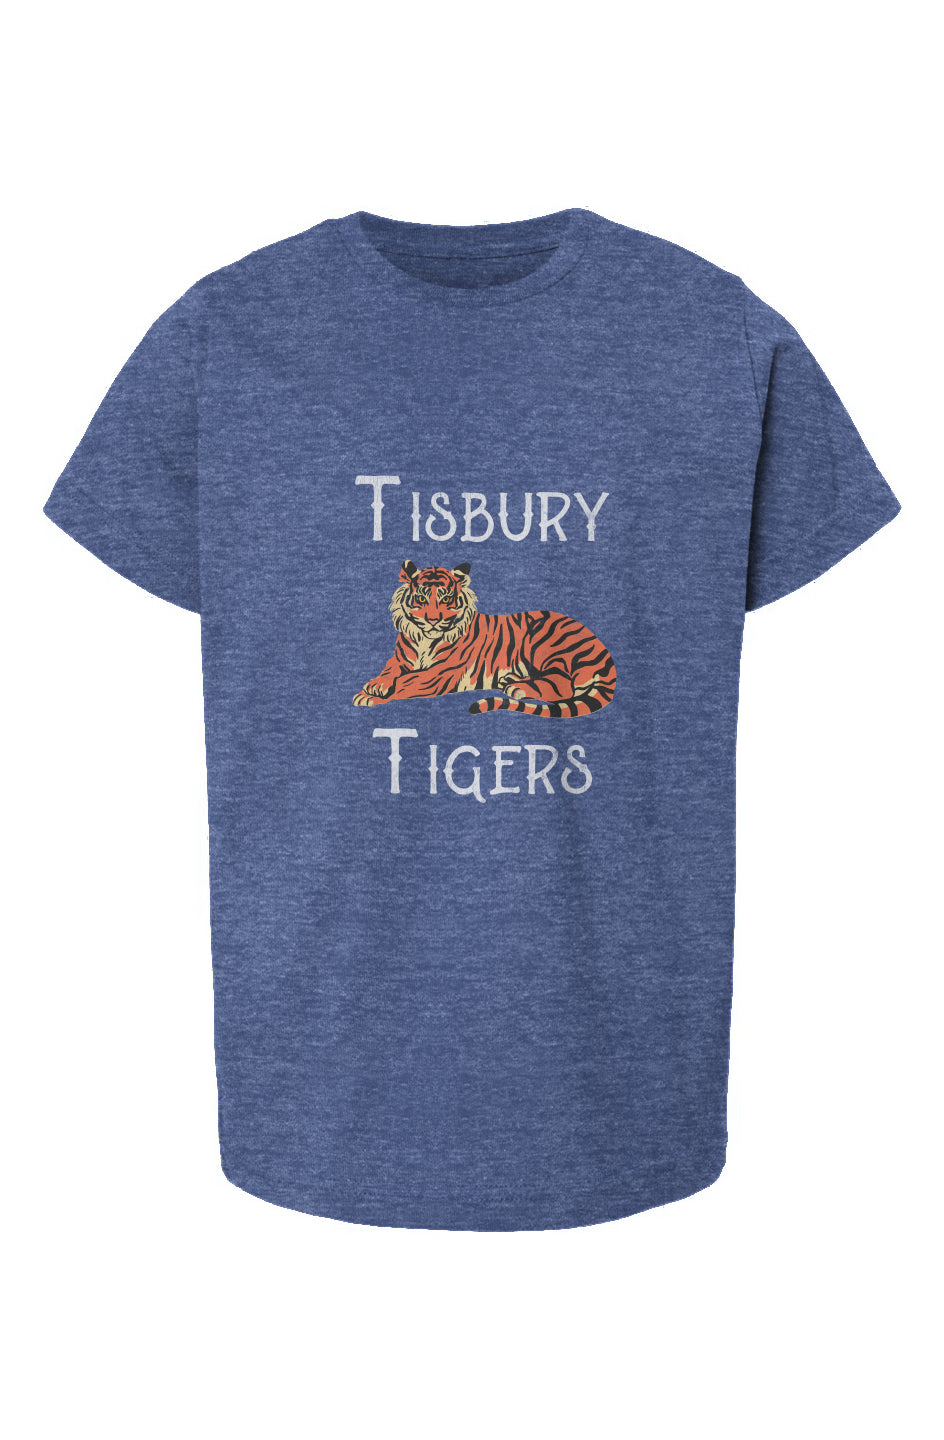 Tisbury Tigers Youth Tee